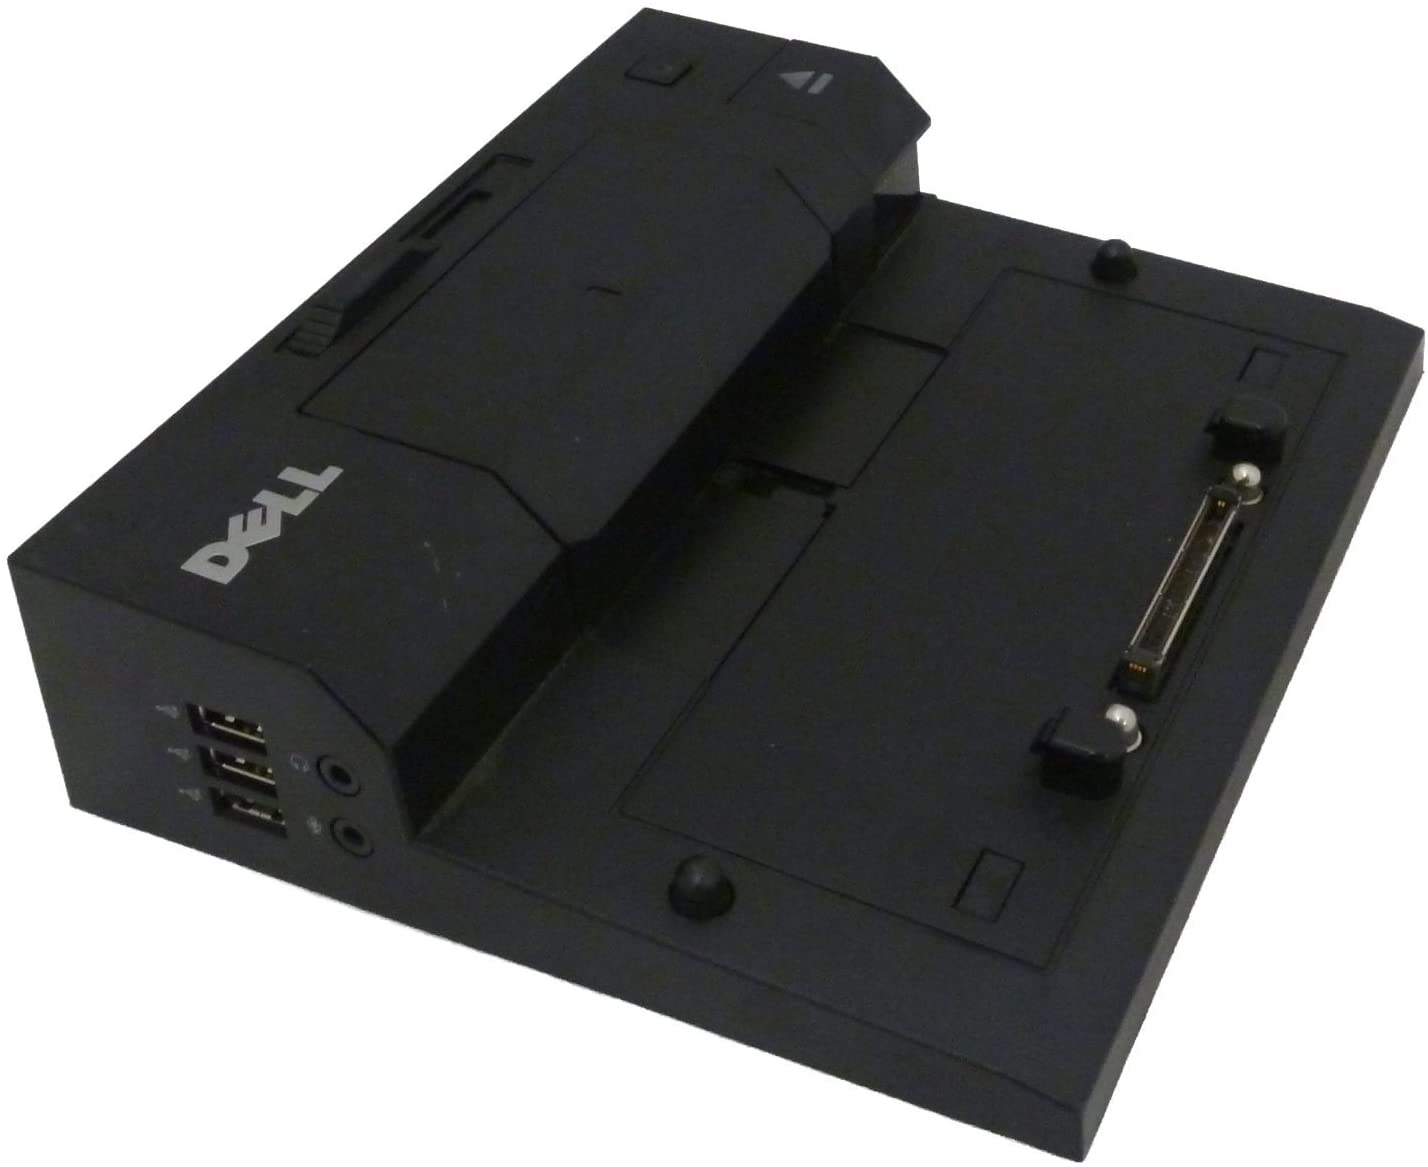 Dell – Port Replicator E5570 (PR03X) Dockingstation für Latitude E5450 E5540 E5550 E7440 E7450 Notebooks